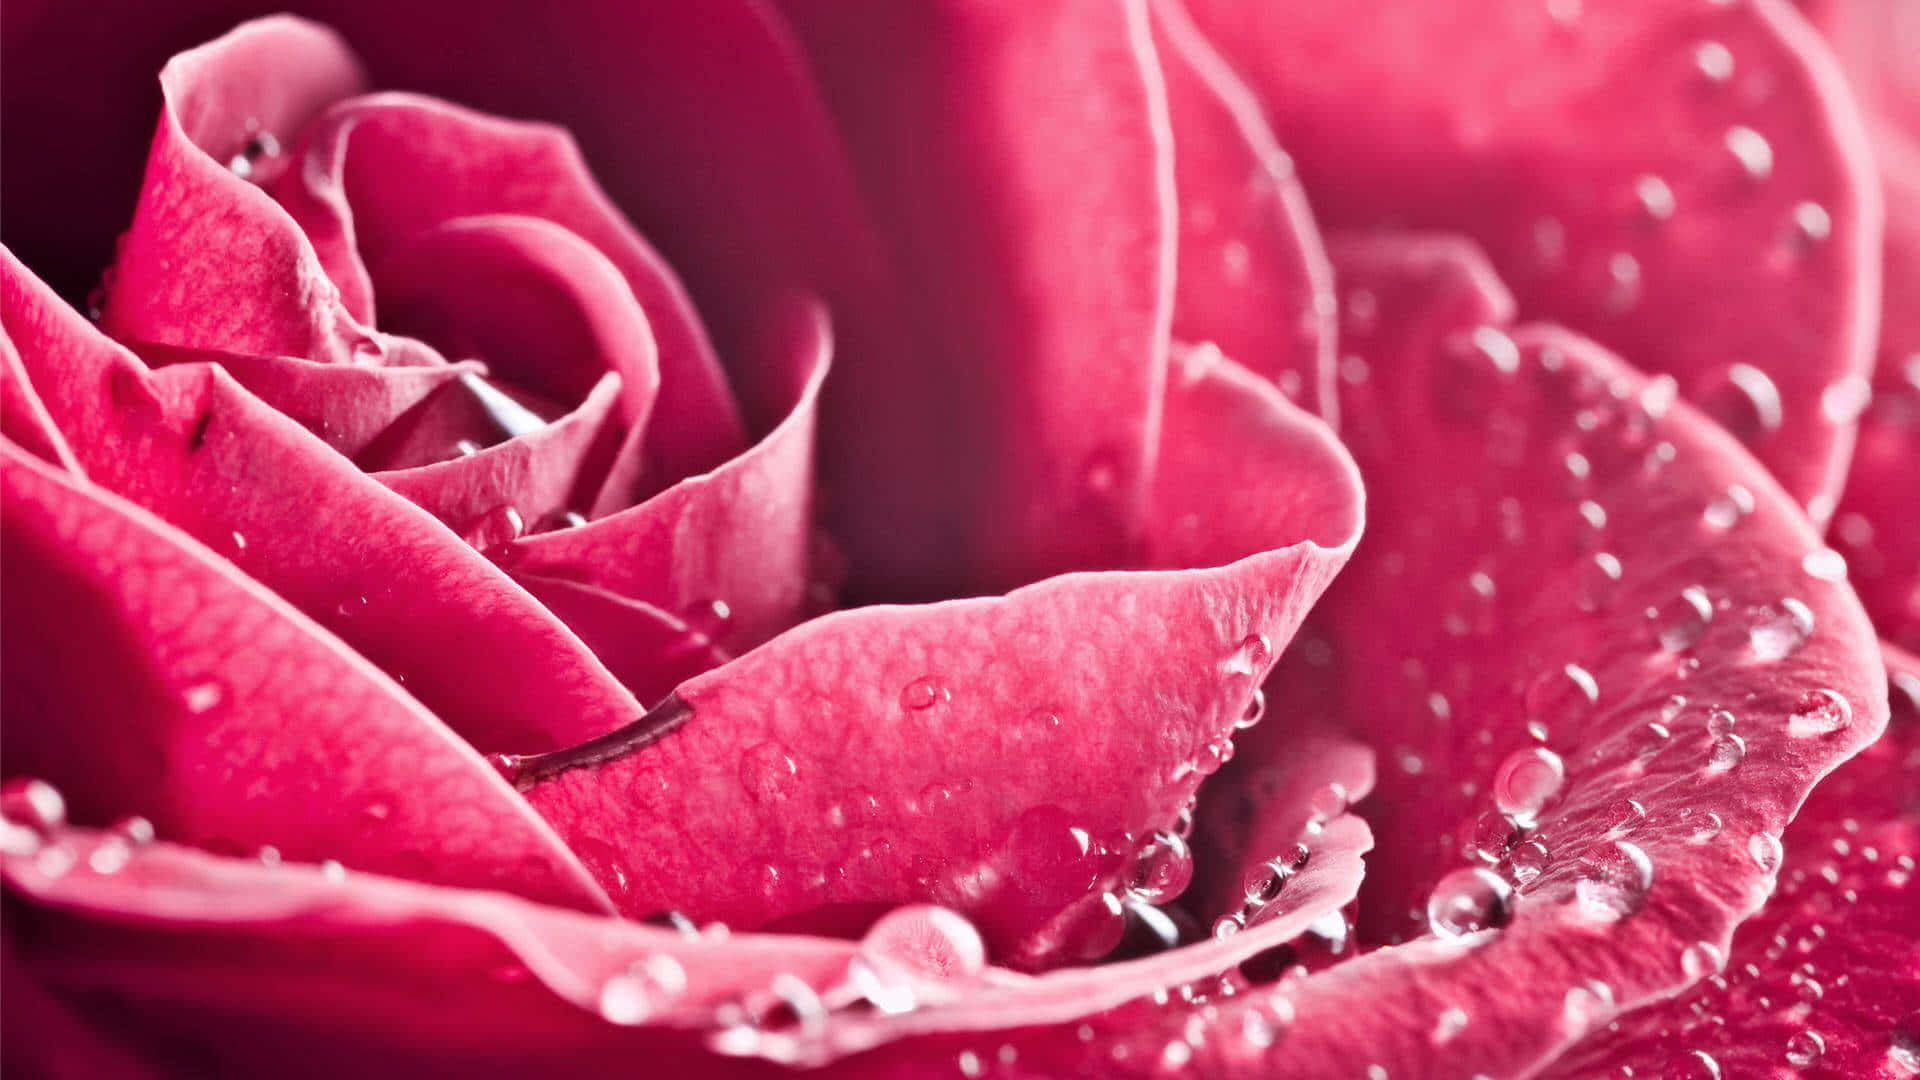 Dark Pink Rose Dew Drops Closeup.jpg Wallpaper